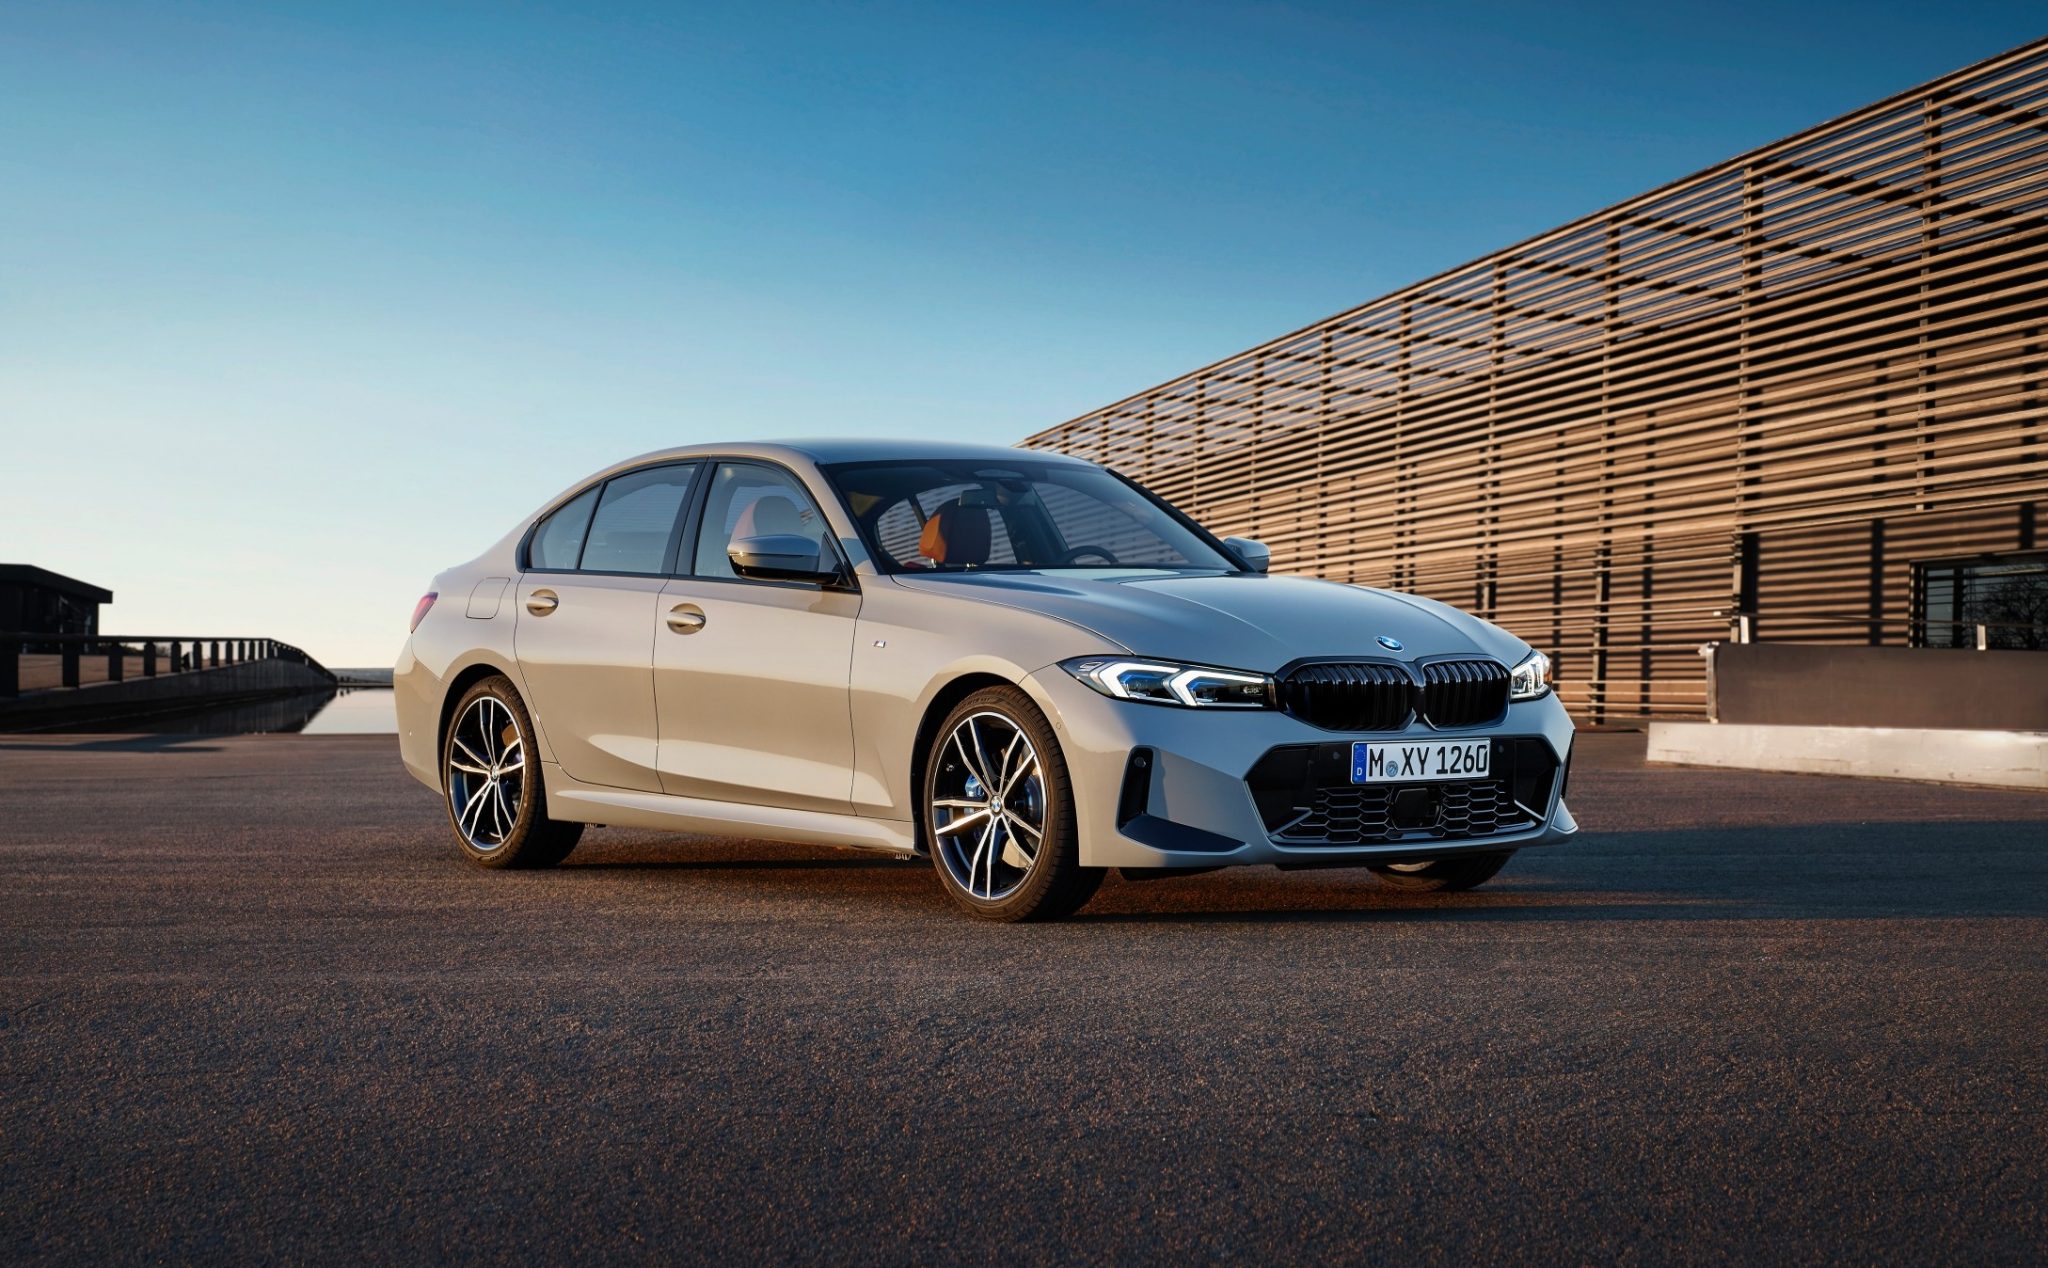 [QC] Giá chỉ từ 1,295 tỷ đồng, BMW 3 Series có mức giá cạnh tranh trong phân khúc